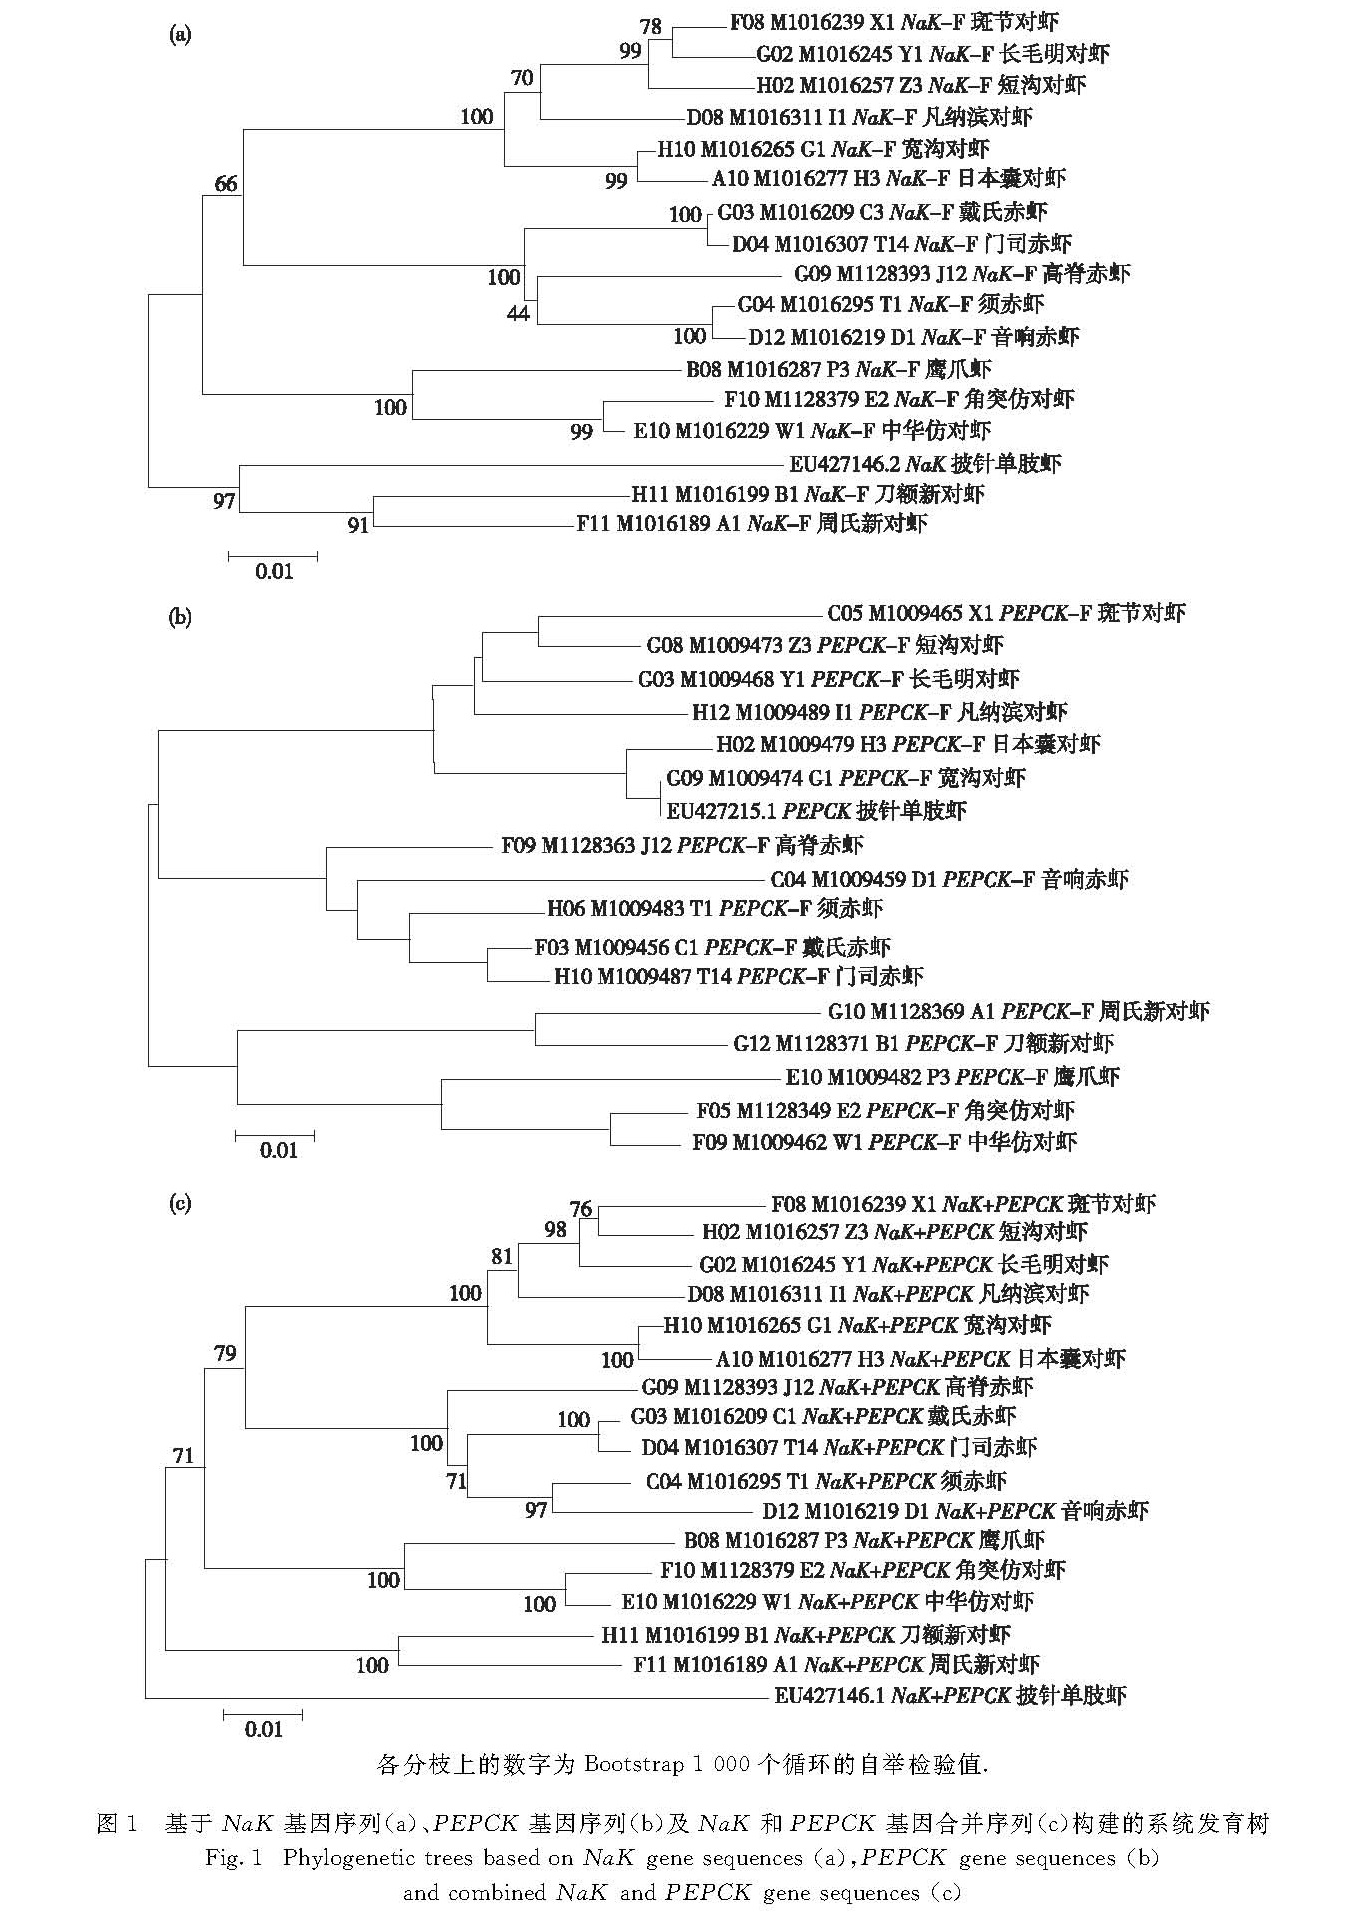 图1 基于NaK基因序列(a)、PEPCK基因序列(b)及NaK和PEPCK基因合并序列(c)构建的系统发育树<br/>Fig.1 Phylogenetic trees based on NaK gene sequences(a),PEPCK gene sequences(b)